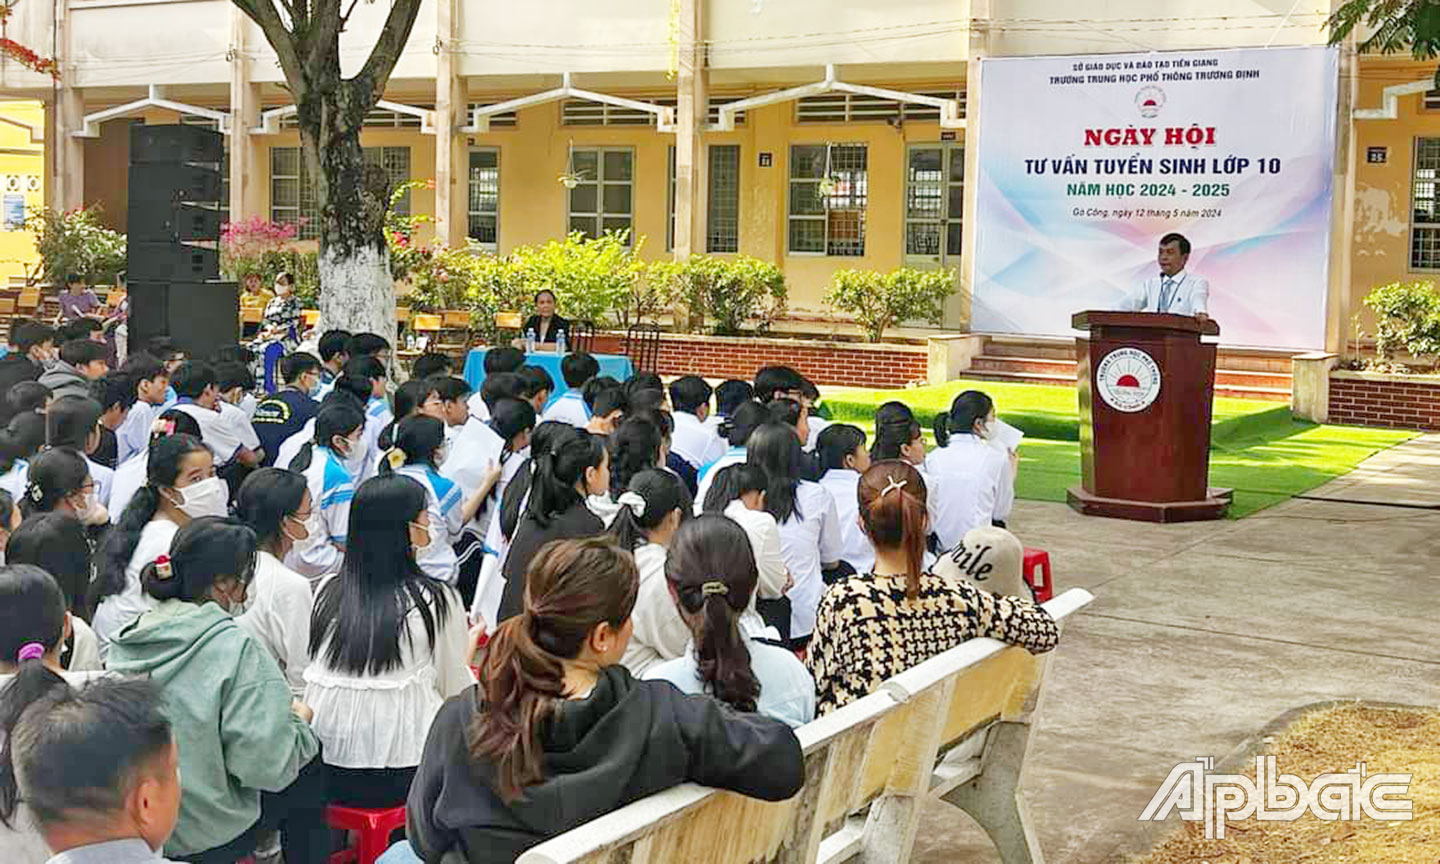 Ngày hội Tư vấn tuyển sinh lớp 10 diễn ra tại Trường THPT Trương Định (TP. Gò Công) vào sáng 12-5.